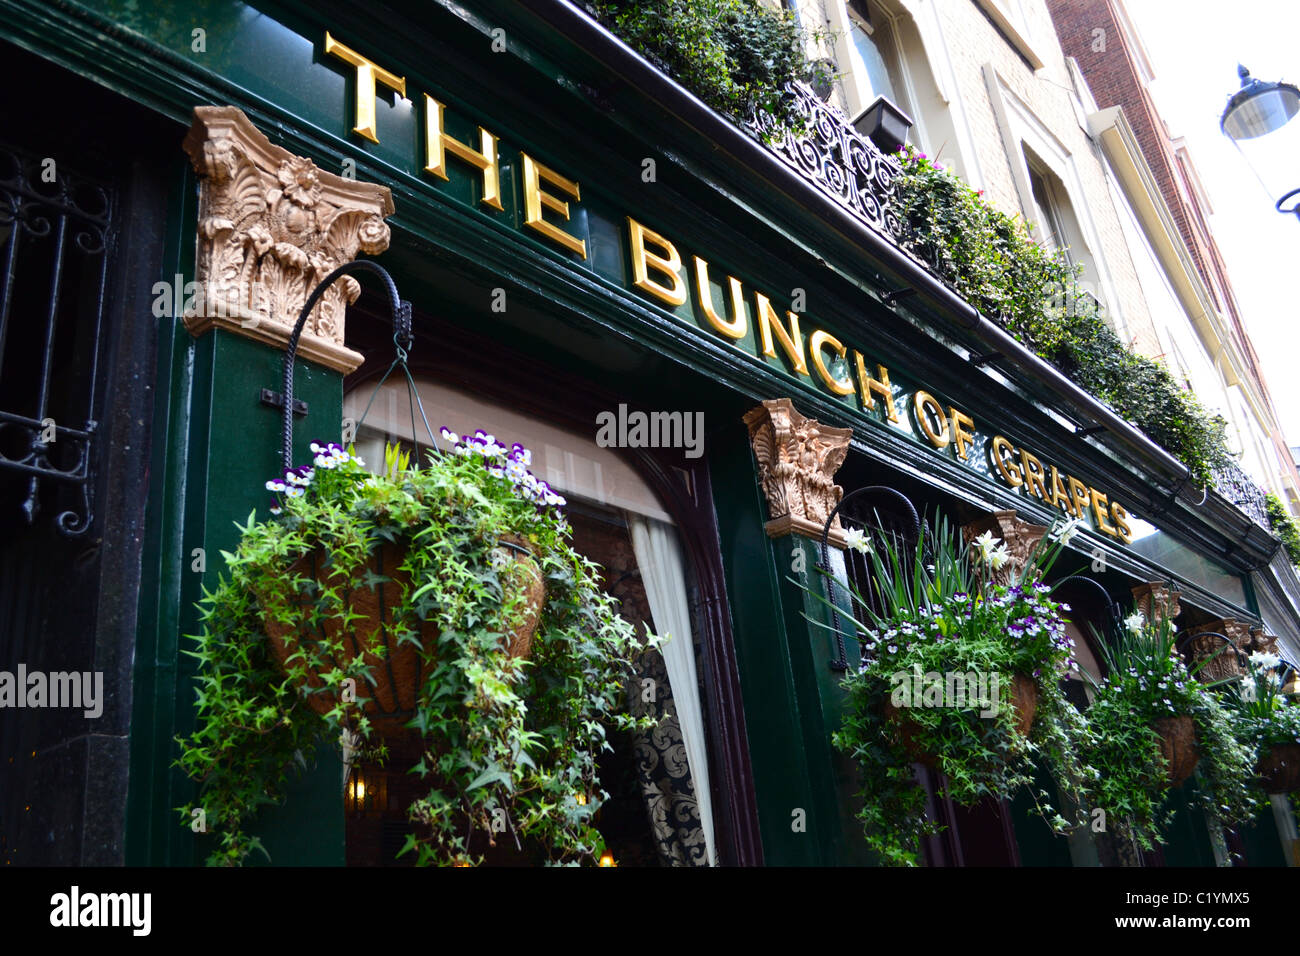 "La grappe de raisins' pub, Knightsbridge, Londres Banque D'Images